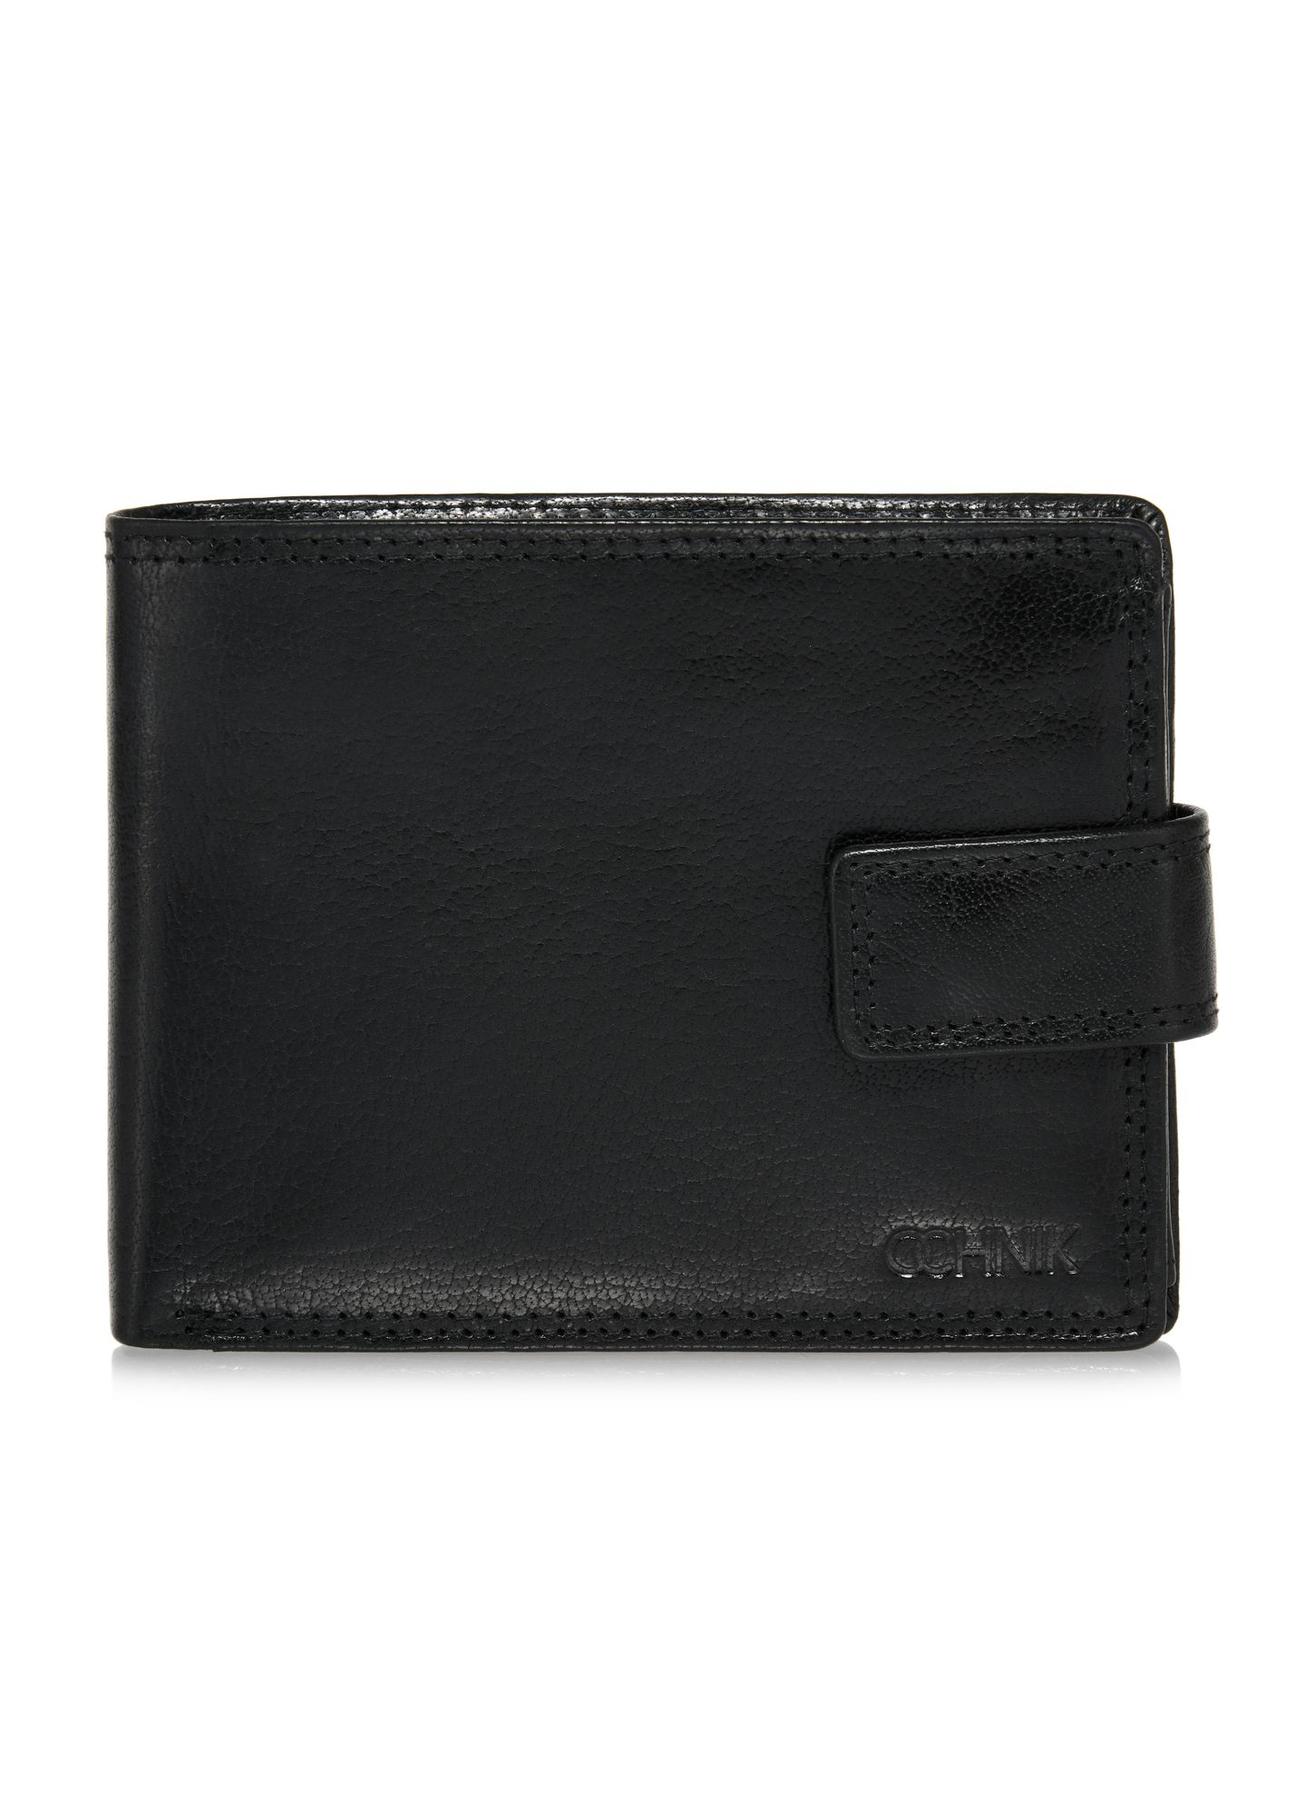 Skórzany zapinany czarny portfel męski PORMS-0553-99(W24)